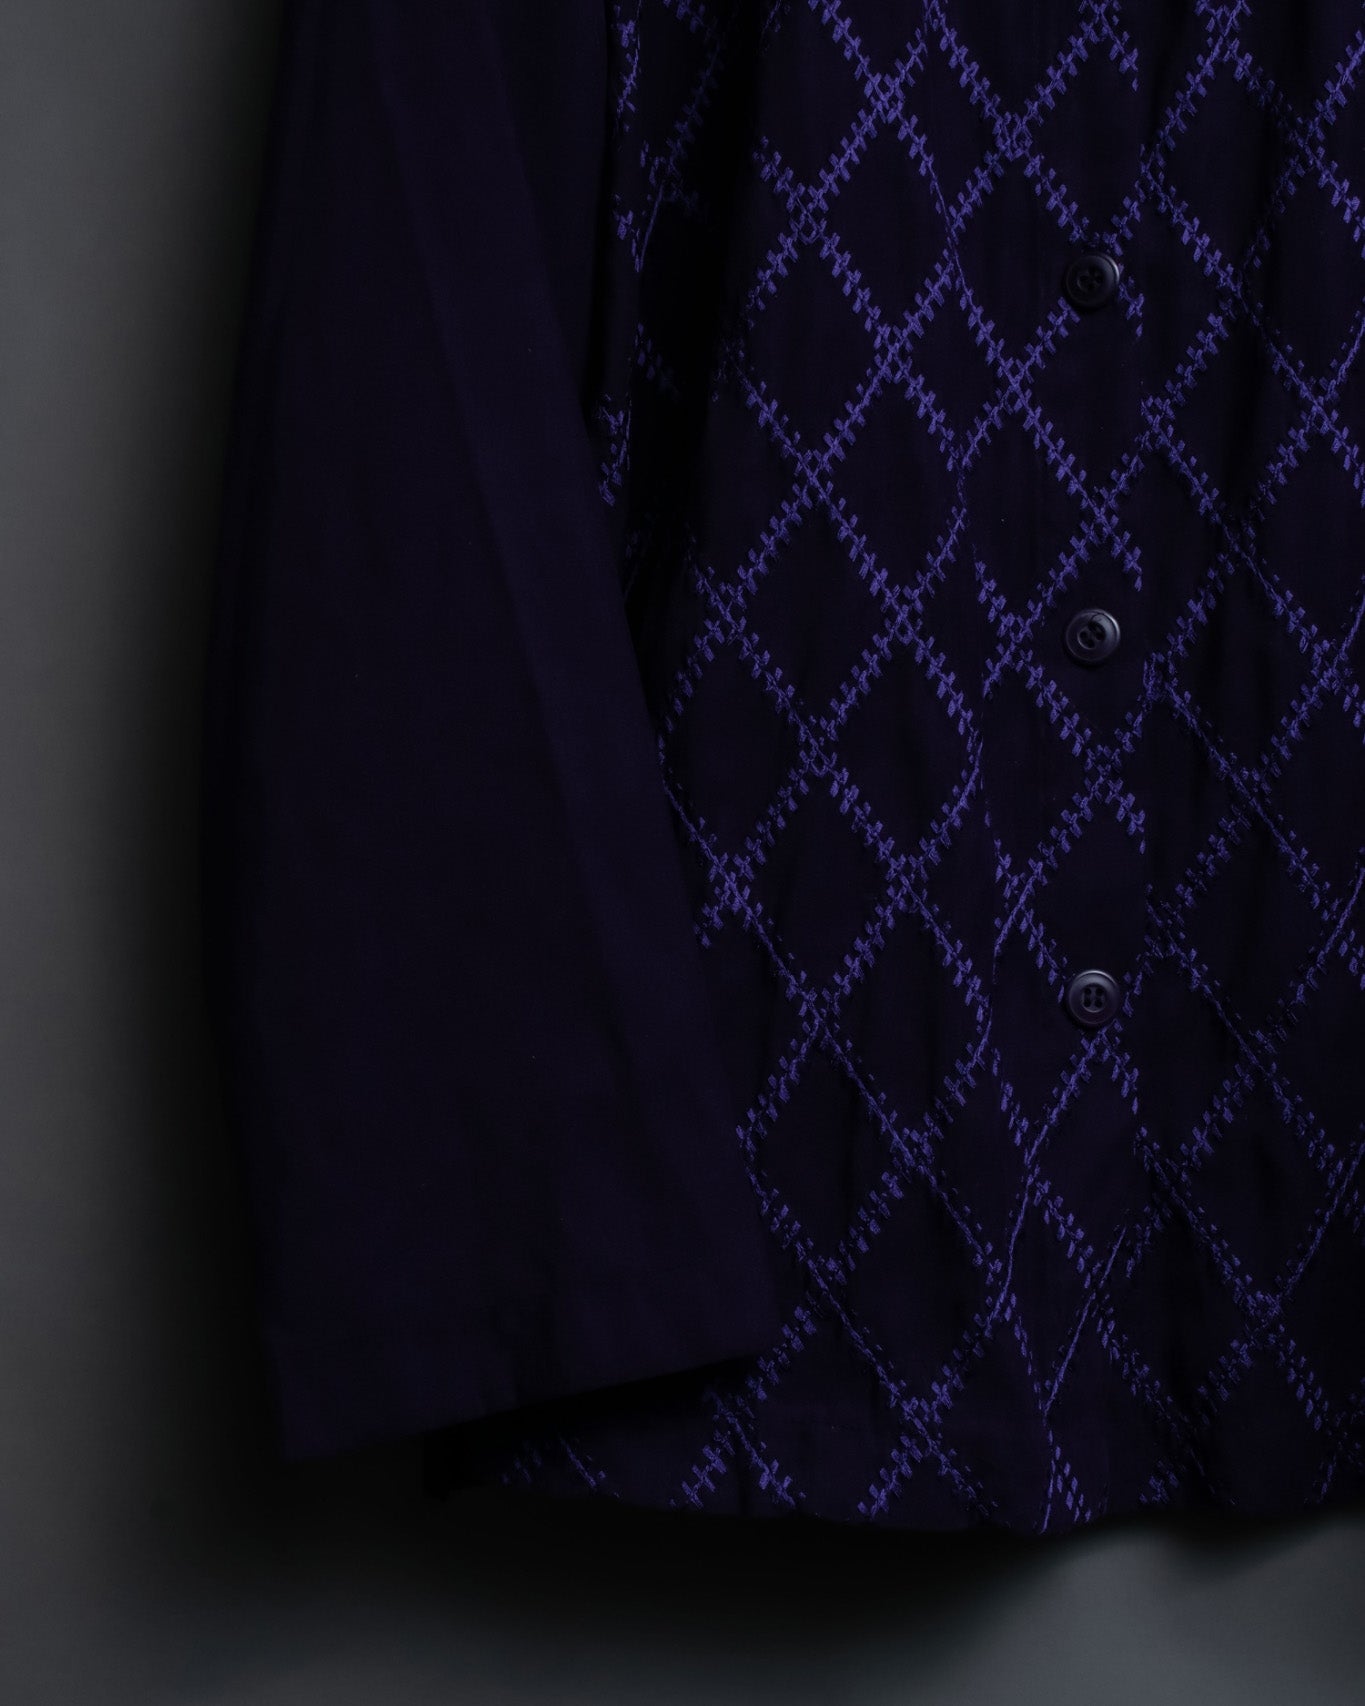 Purple Embroidery Pattern Shirt